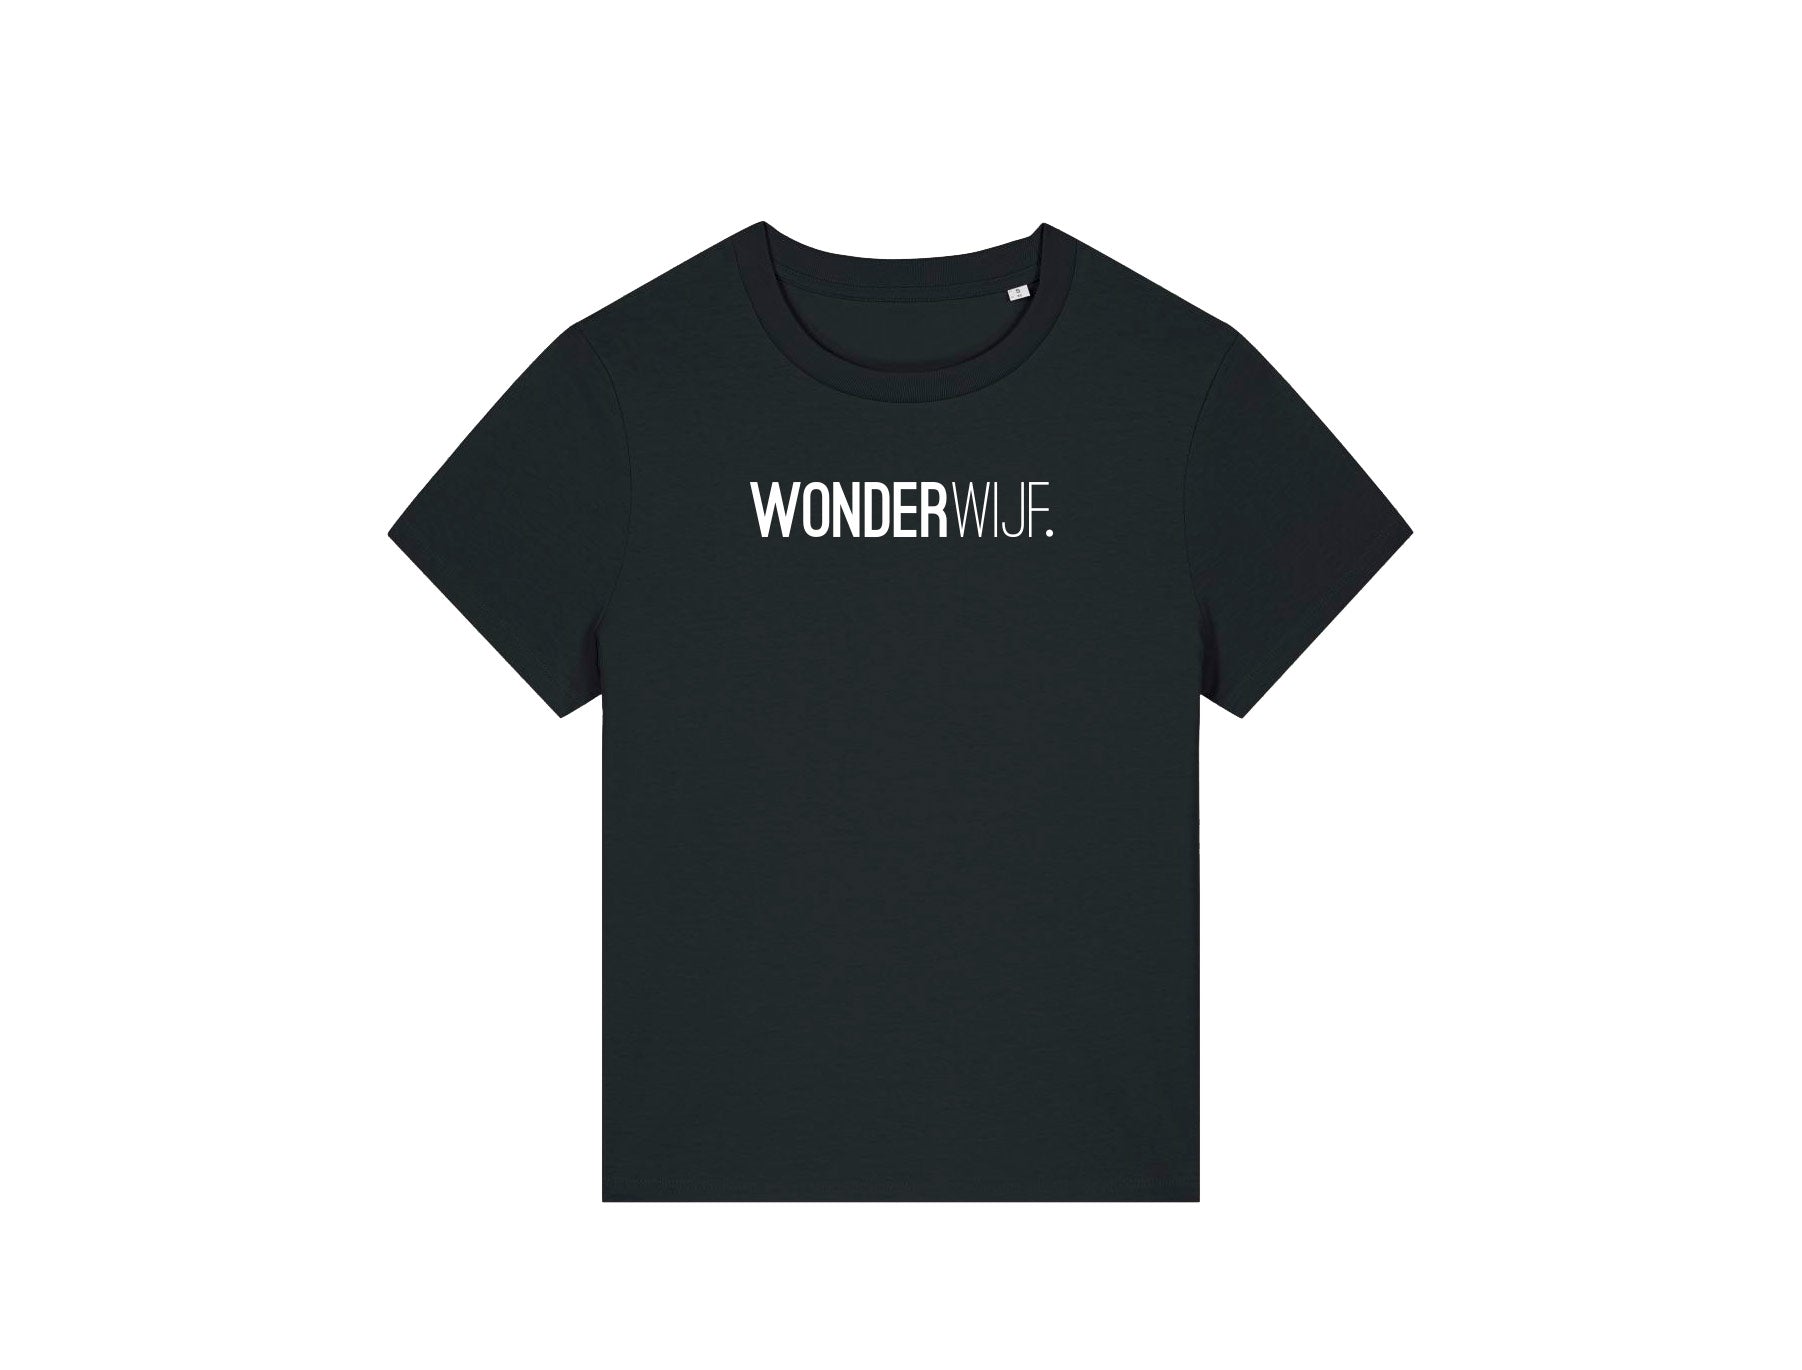 Zwarte T-shirt met opdruk WONDERWIJF.